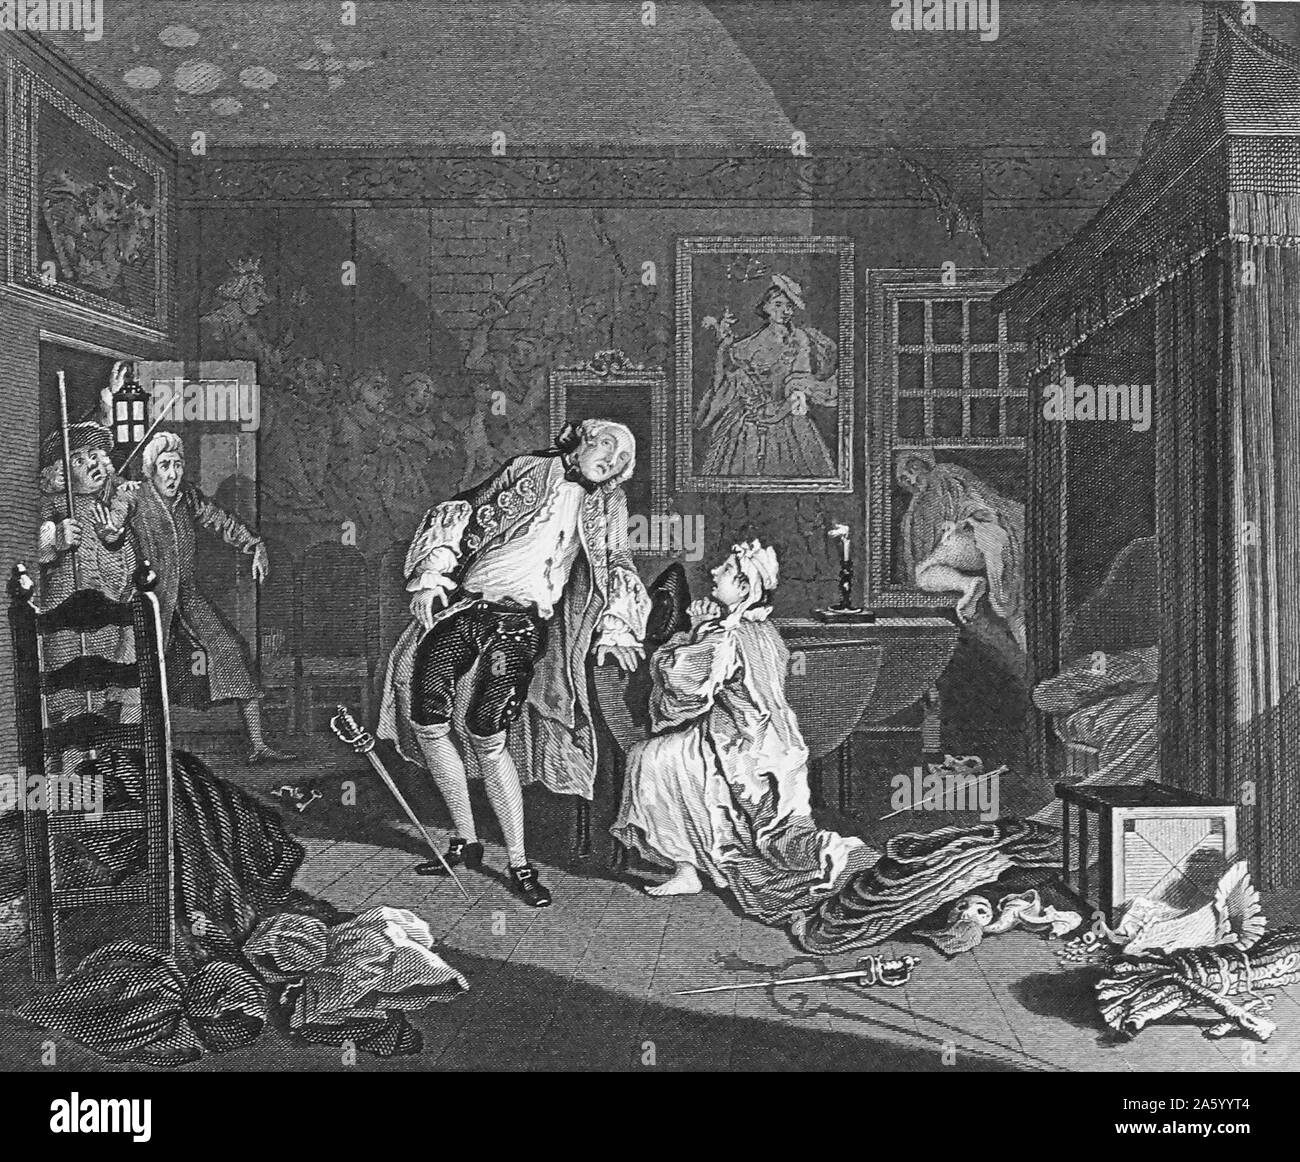 Incisione intitolata 'Matrimonio A la Mode" da William Hogarth (1697-1764) pittore inglese, printmaker, pittoriche satiro, critico sociale e fumettista editoriale che è stato accreditato con pionieristico di western arte sequenziale. Datata xviii secolo. Foto Stock